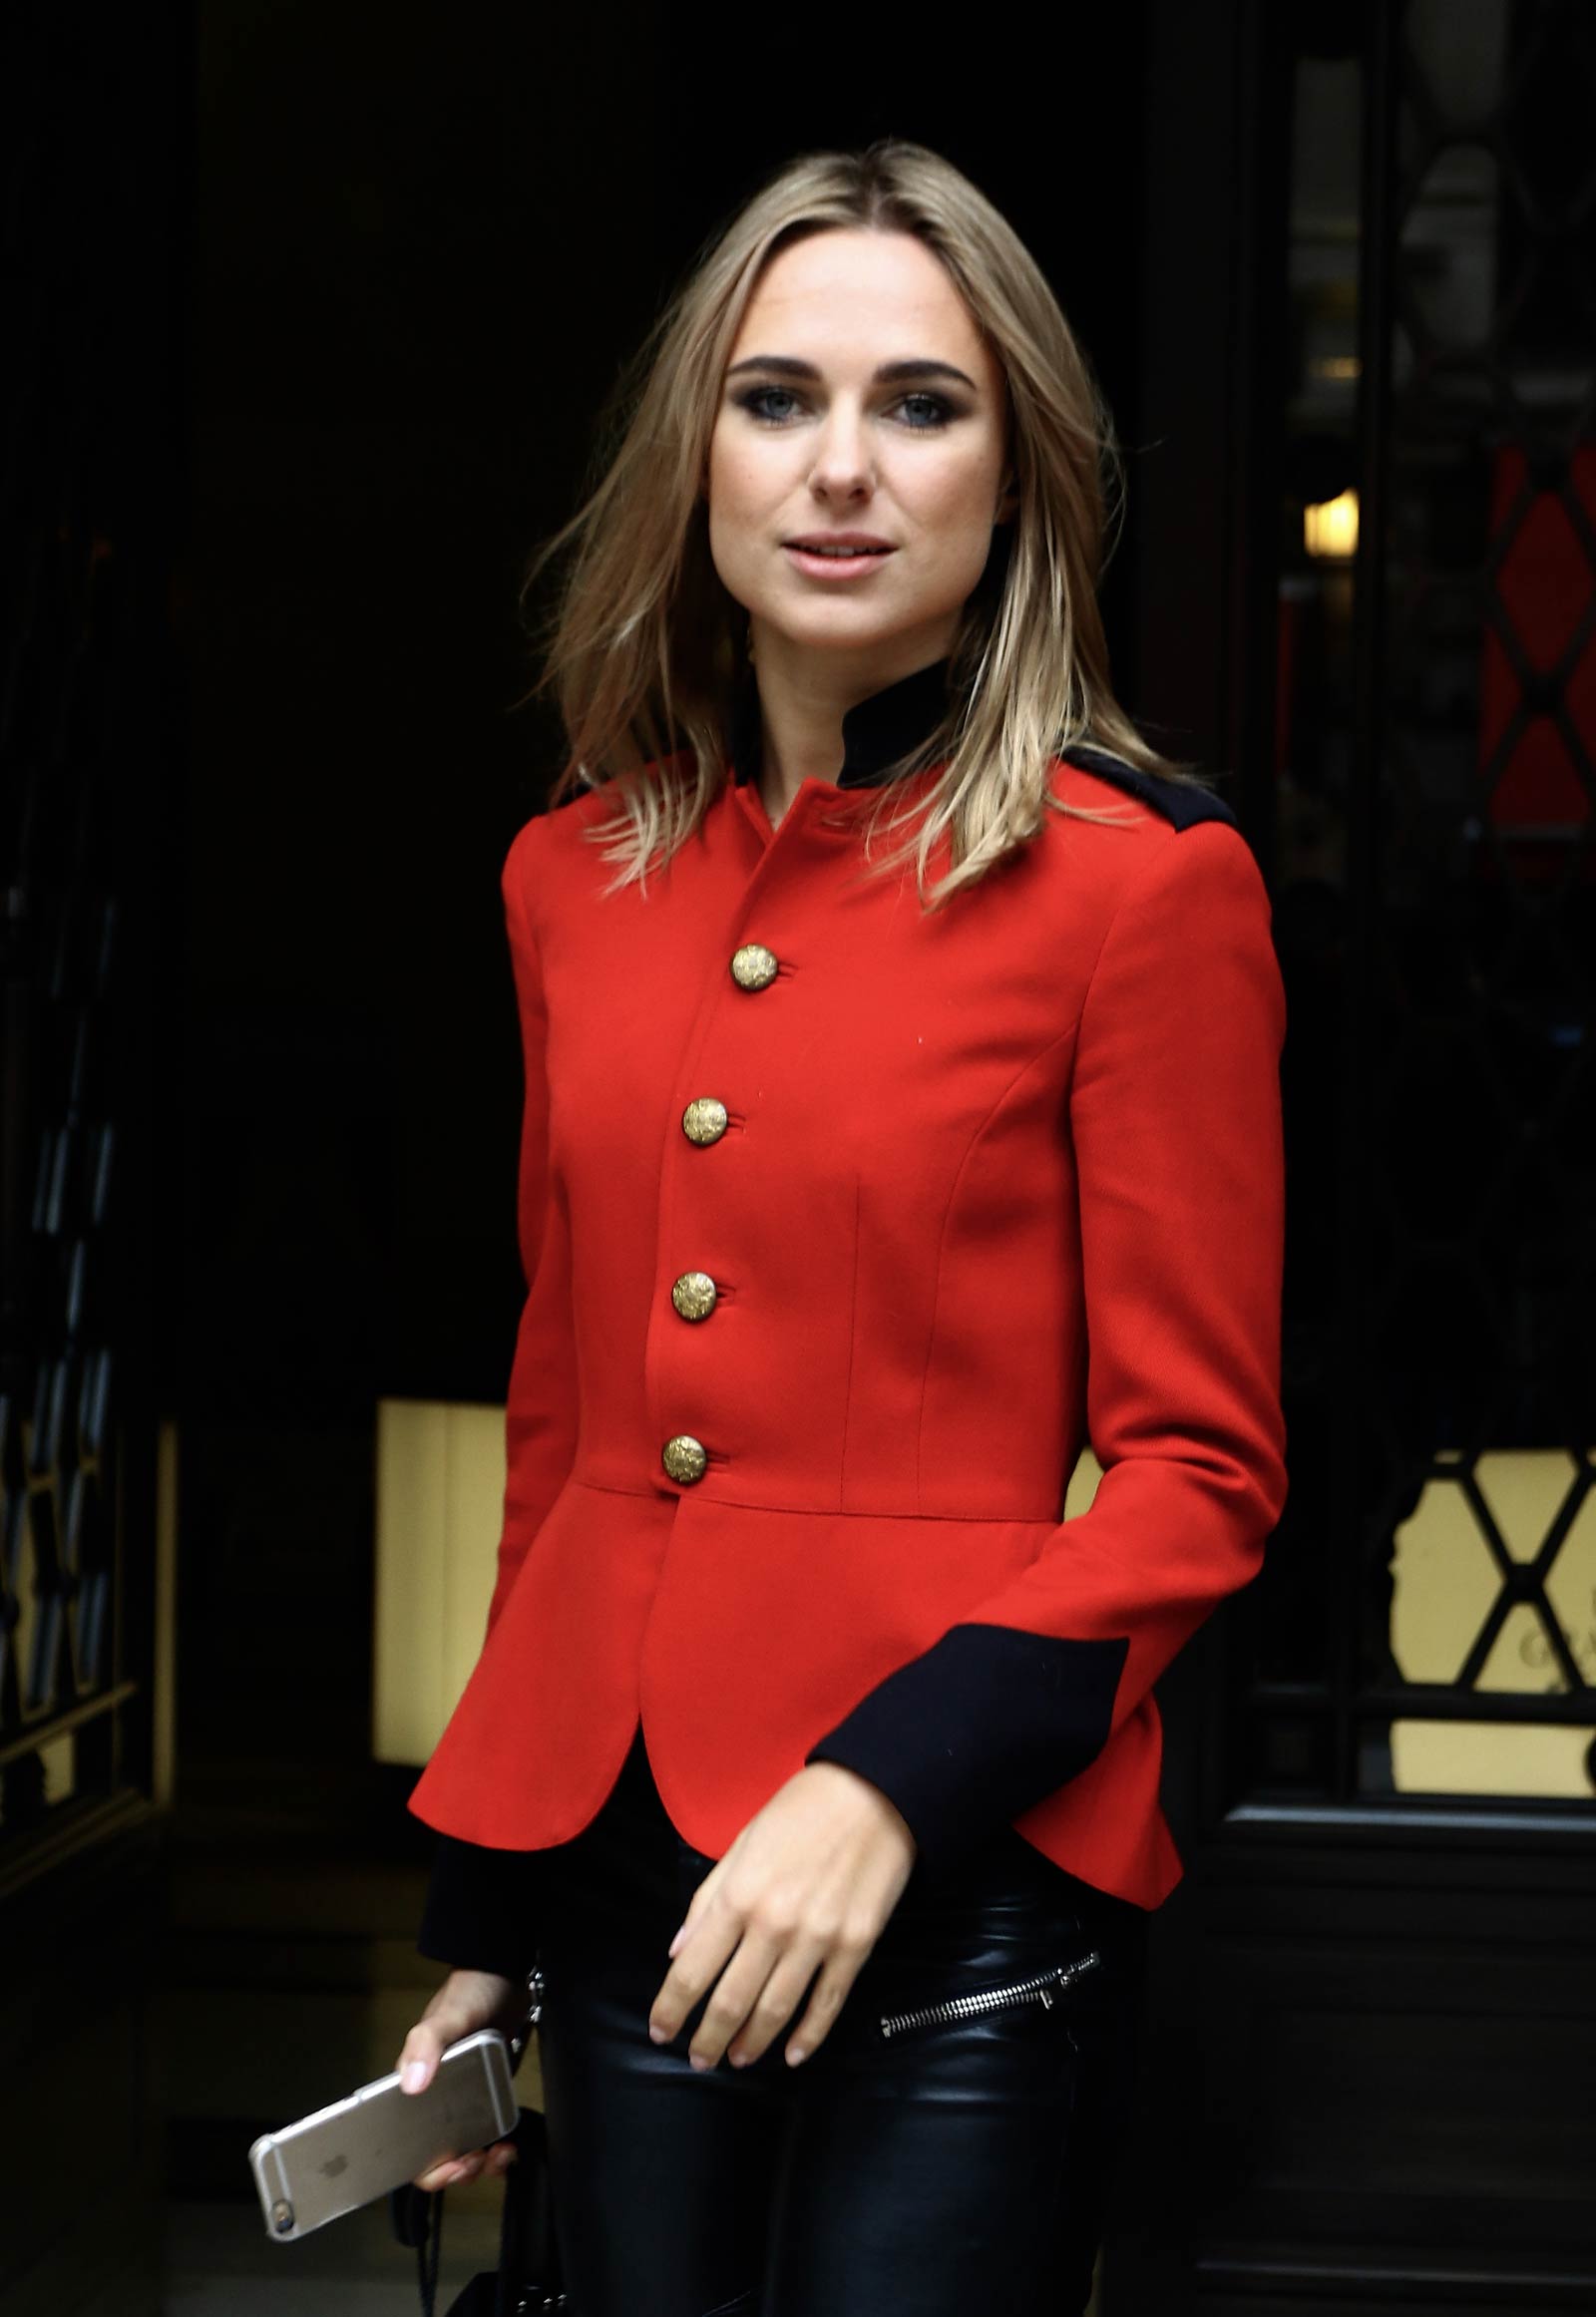 Kimberley Garner out during London Fashion Week